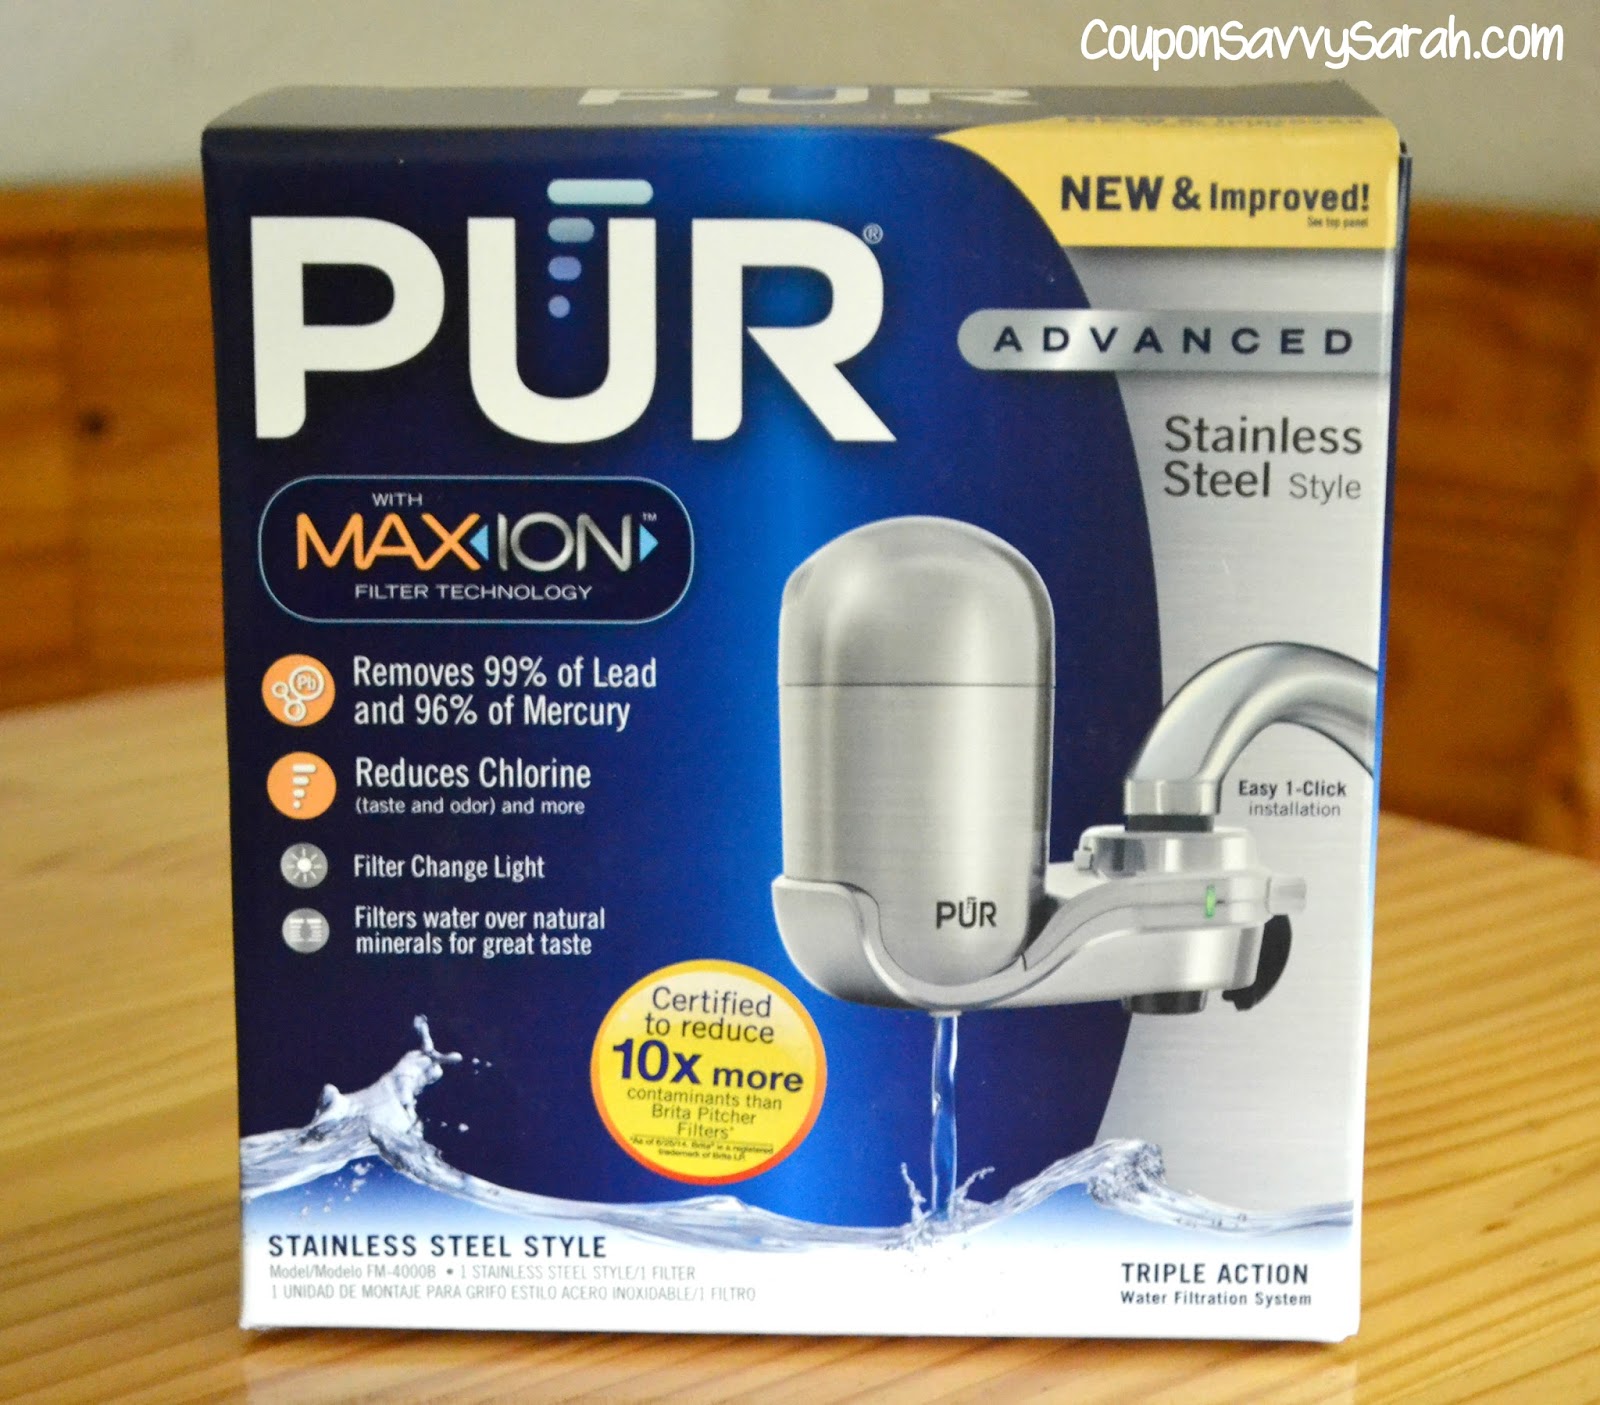 coupon-savvy-sarah-pur-water-pitcher-and-faucet-mount-filter-product